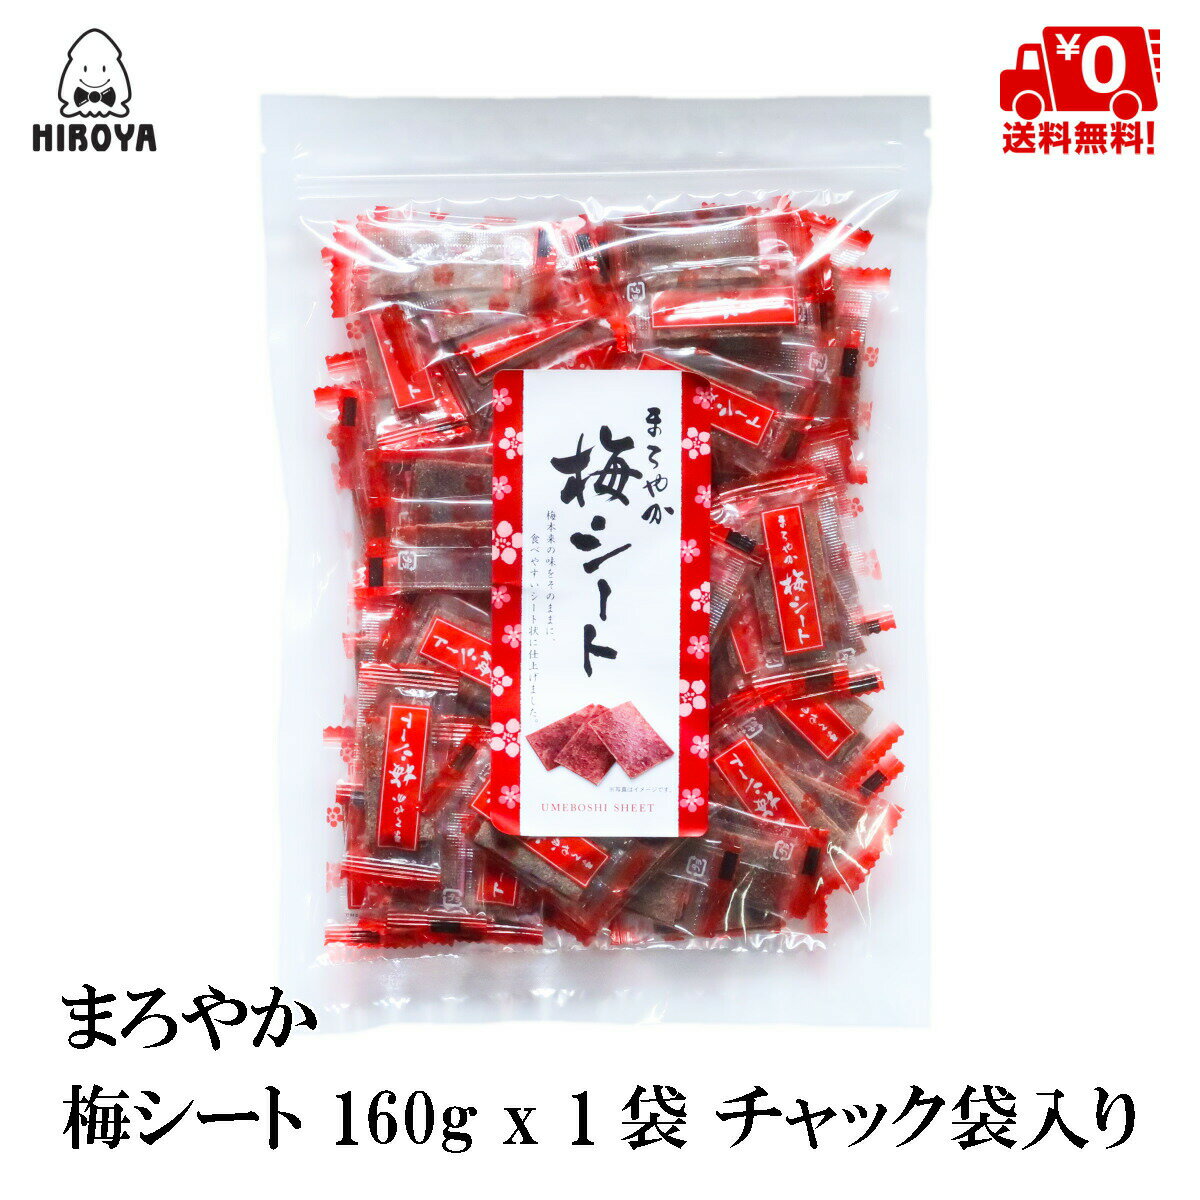 博屋 梅片 160g x 1包 梅干 梅菓子 梅乾 單獨包裝 圓潤梅片 夾鏈袋裝日本必買 | 日本樂天熱銷